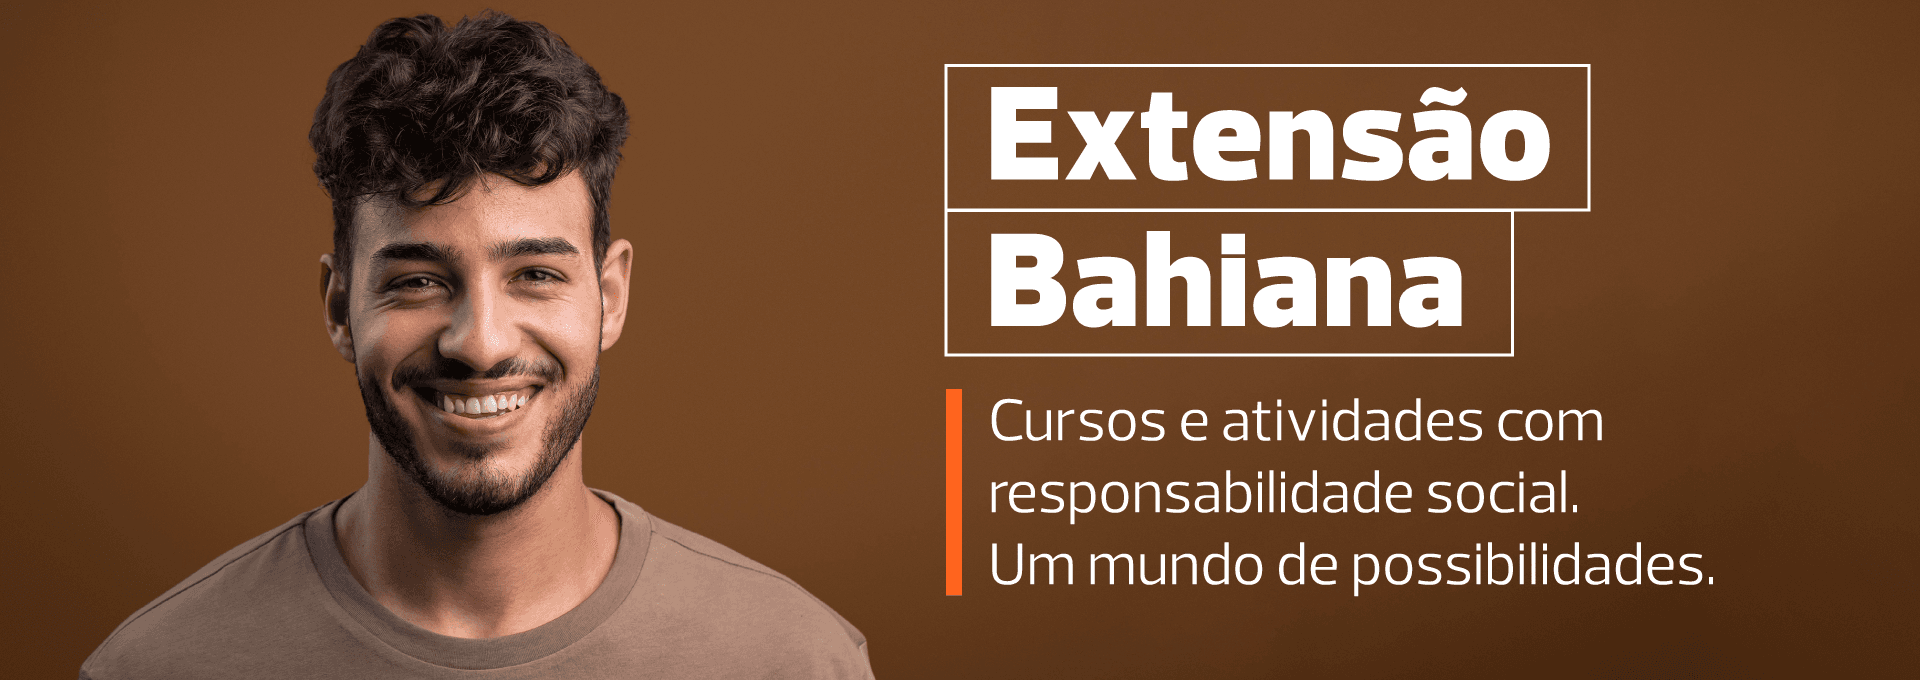 Bahiana Banners Para Site Extensao 02924